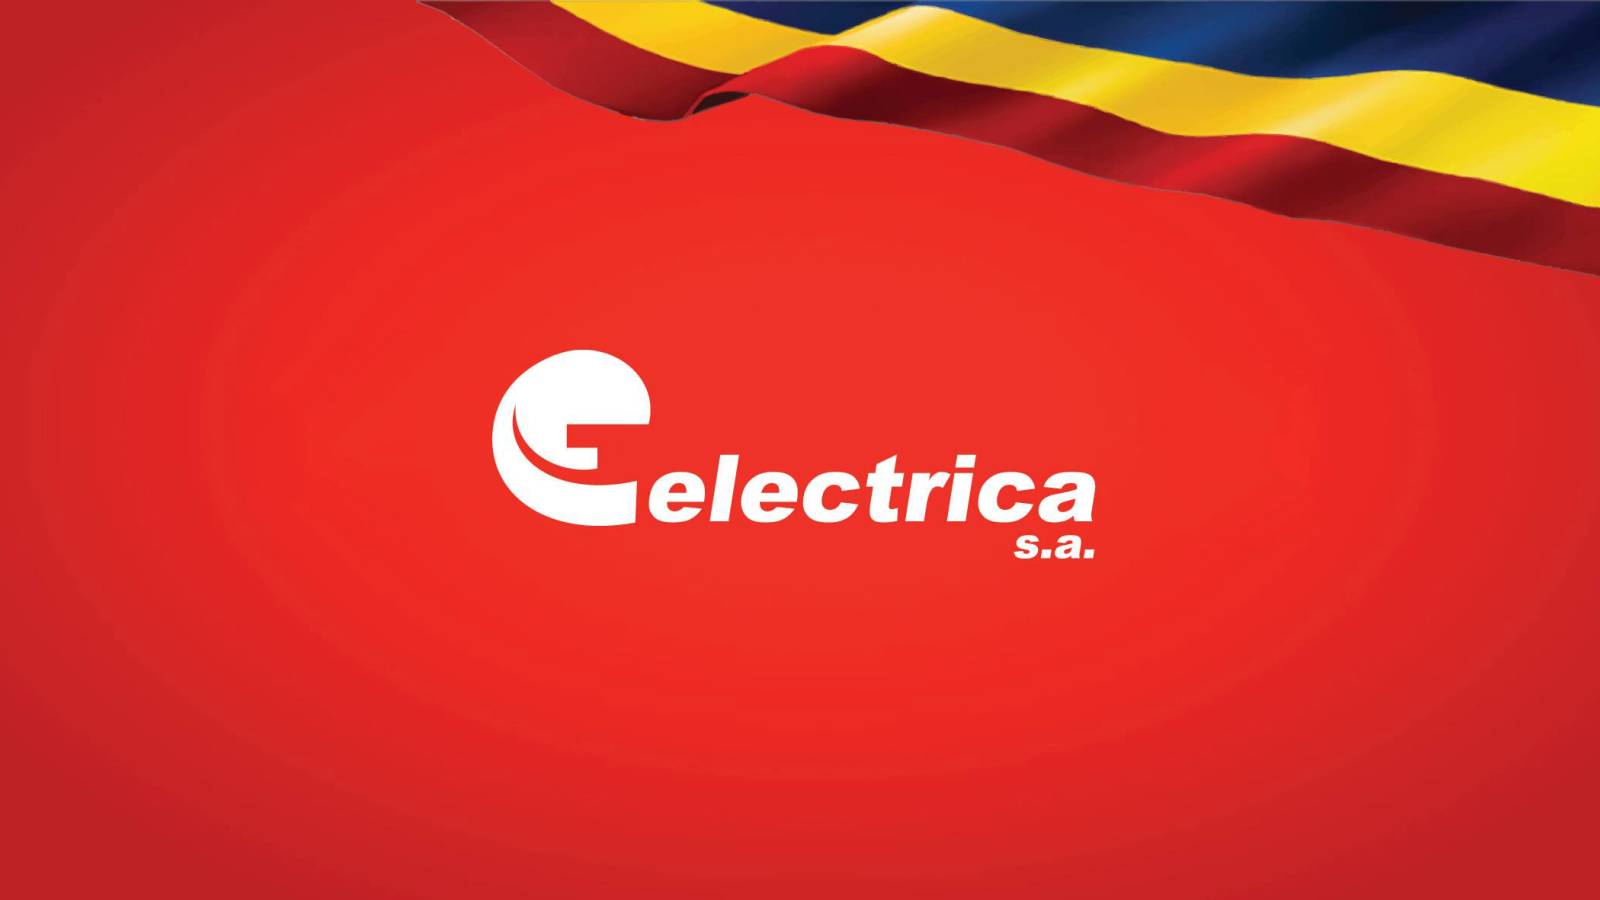 Electrica Virallinen ilmoitus LAST MINUTE TÄRKEÄ päätös Romanian asiakkaat